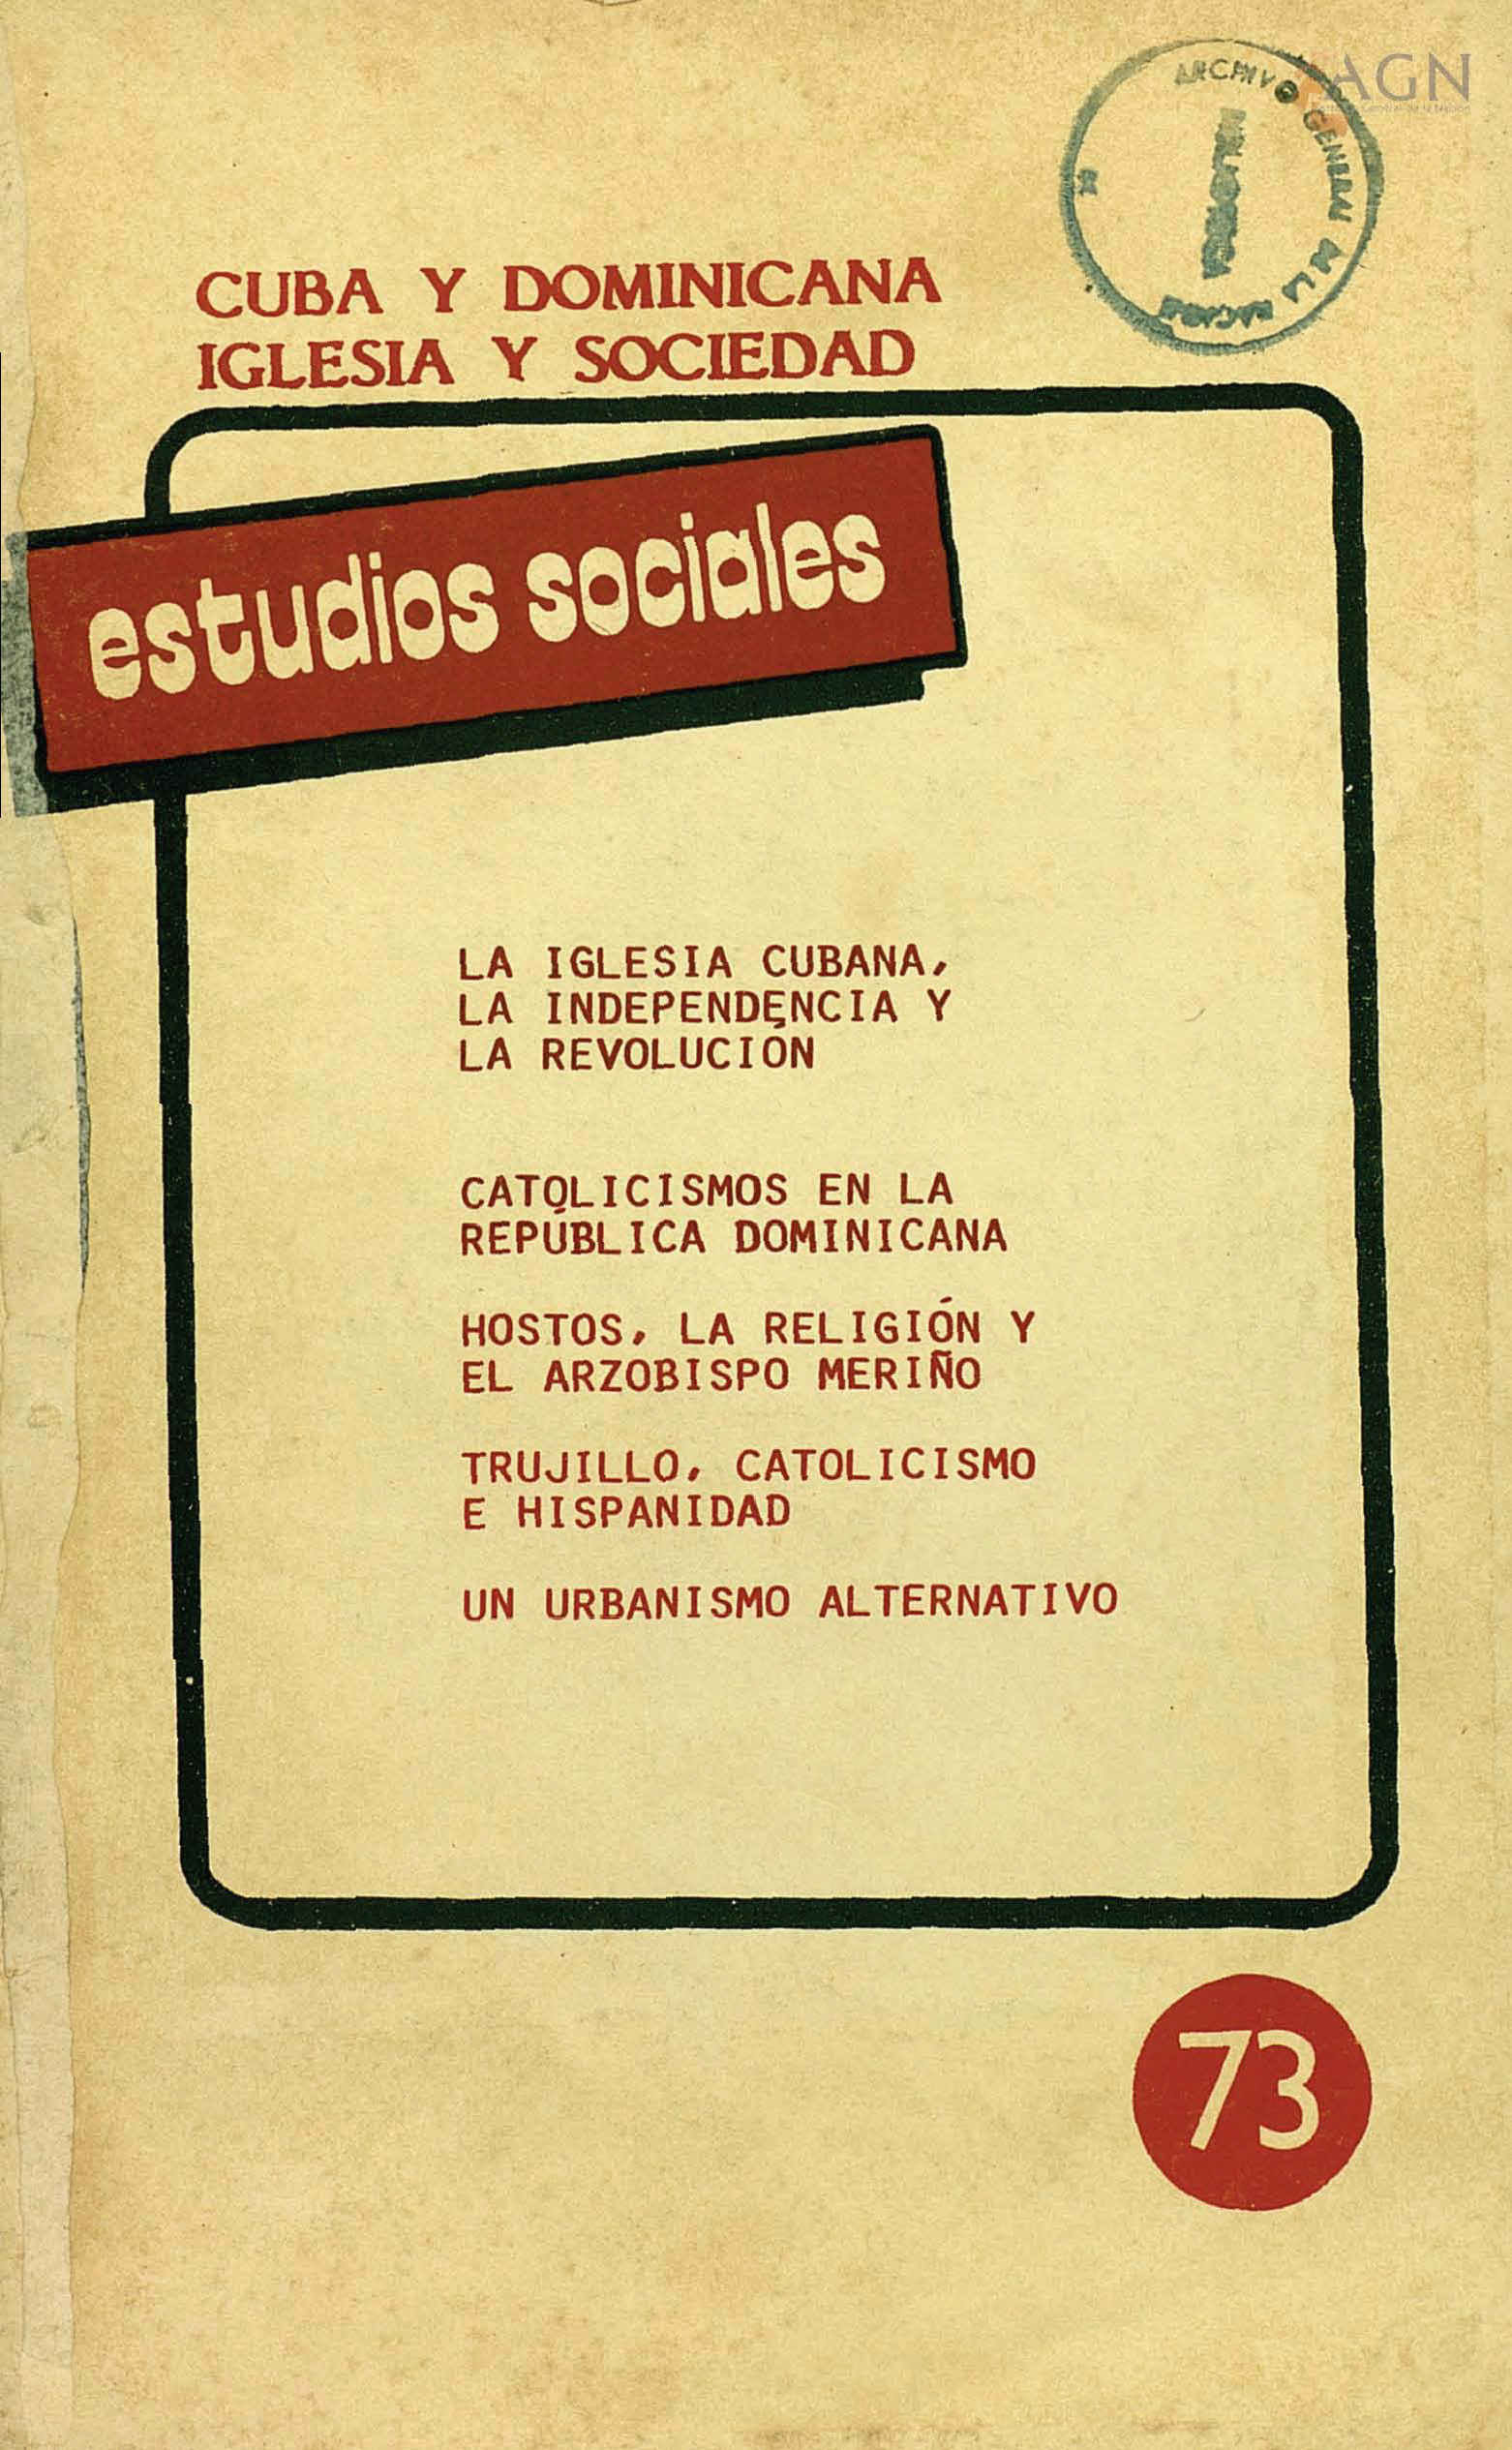 						View Vol. 21 No. 73 (1988): Cuba y Dominicana. Iglesia y Sociedad
					